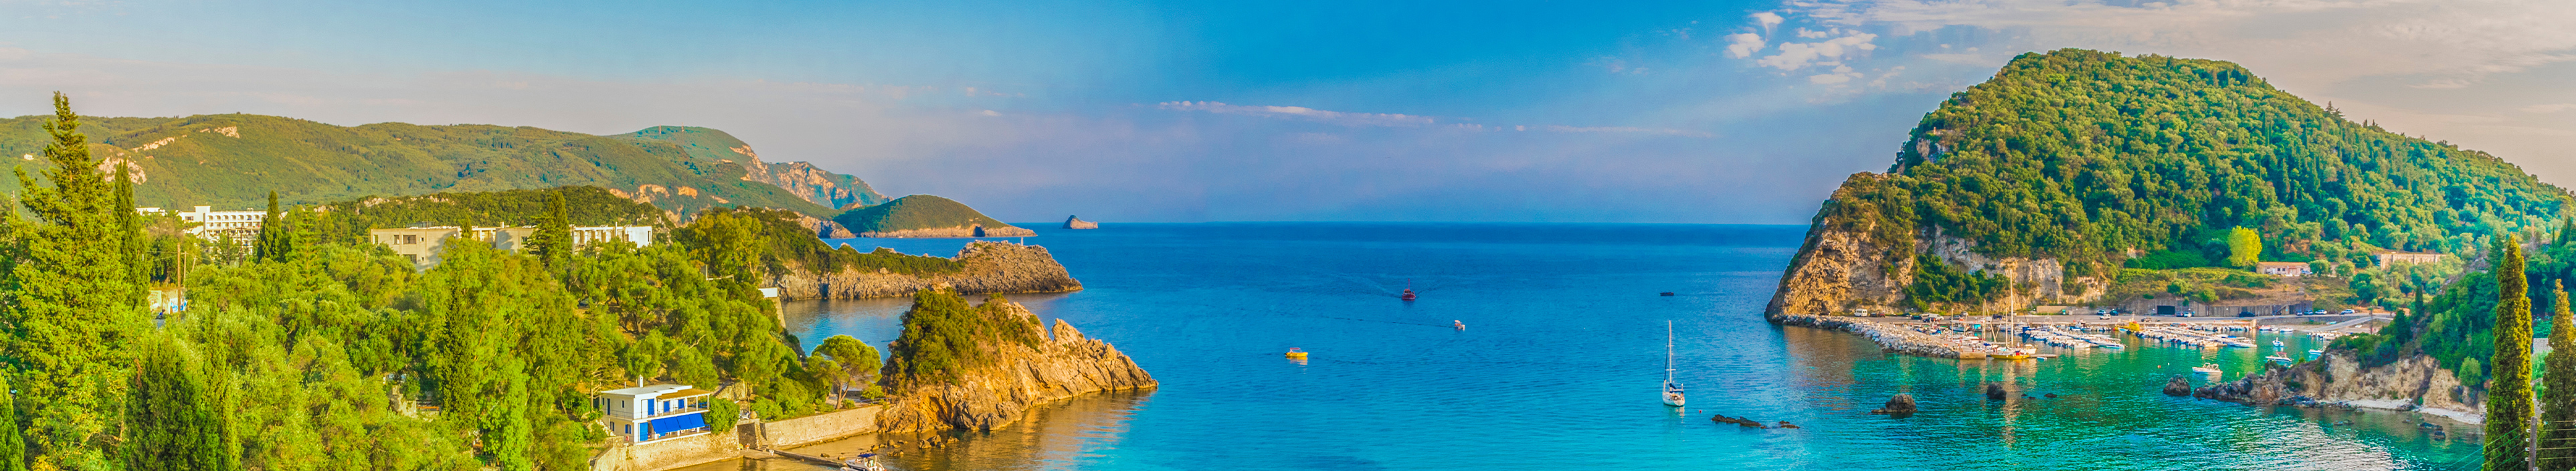 Panoramablick auf die Lagunenbucht von Paleokastritsa auf der Insel Korfu, Griechenland